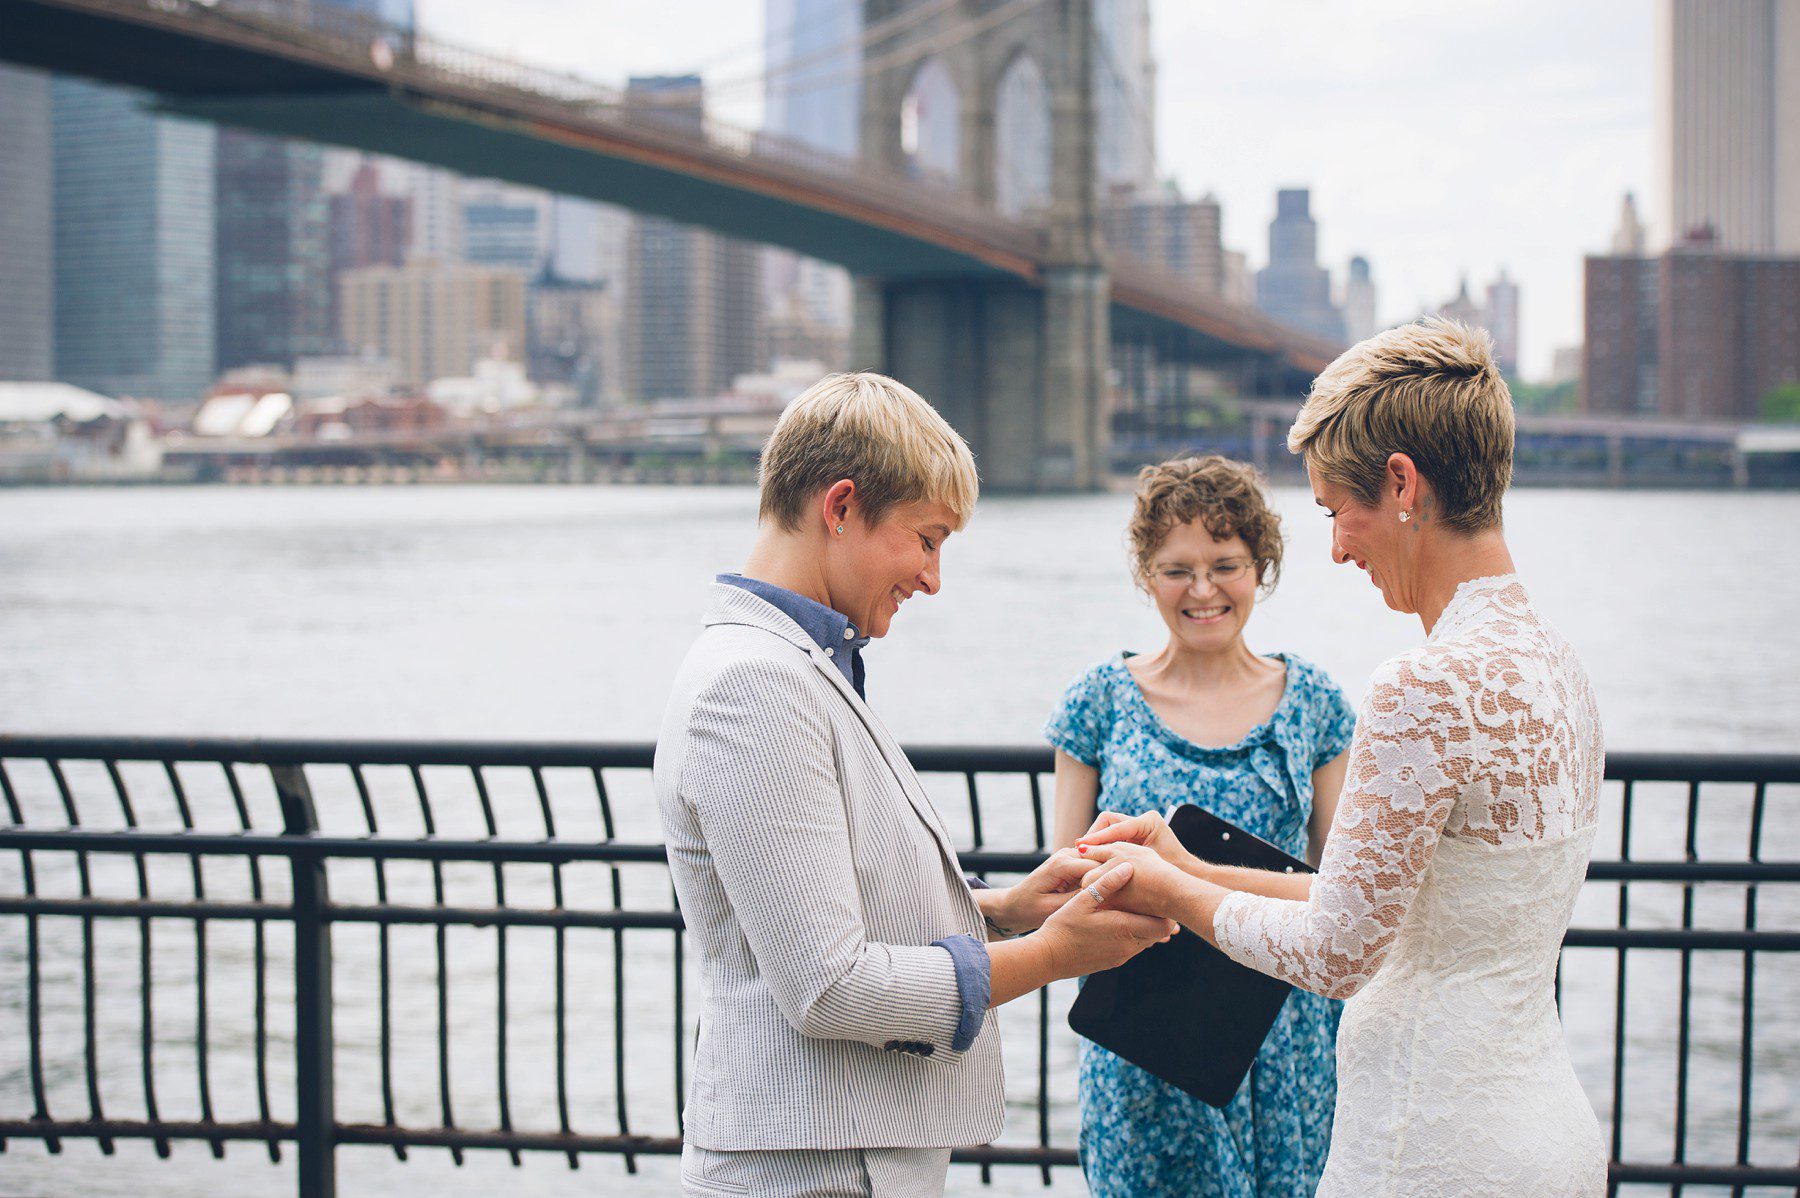 Brooklyn Bridge Park,Dumbo,elope in new york,elopement in NYC,heiraten in new york,love is love,